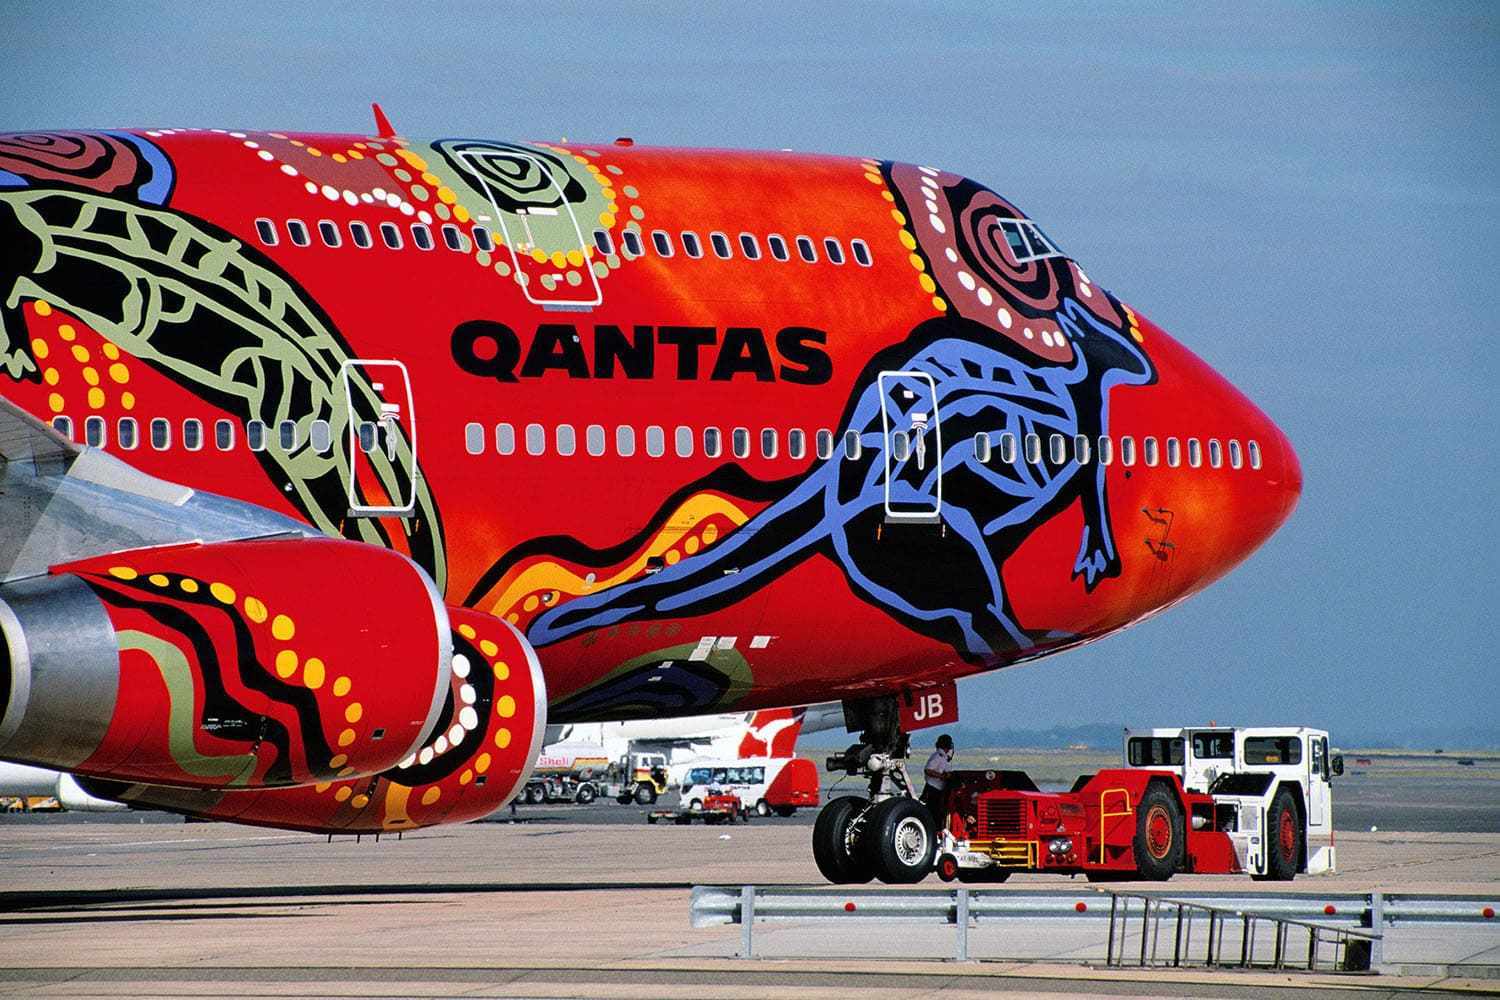 Qantas Boeing 747-438 Aircraft VH-OJB